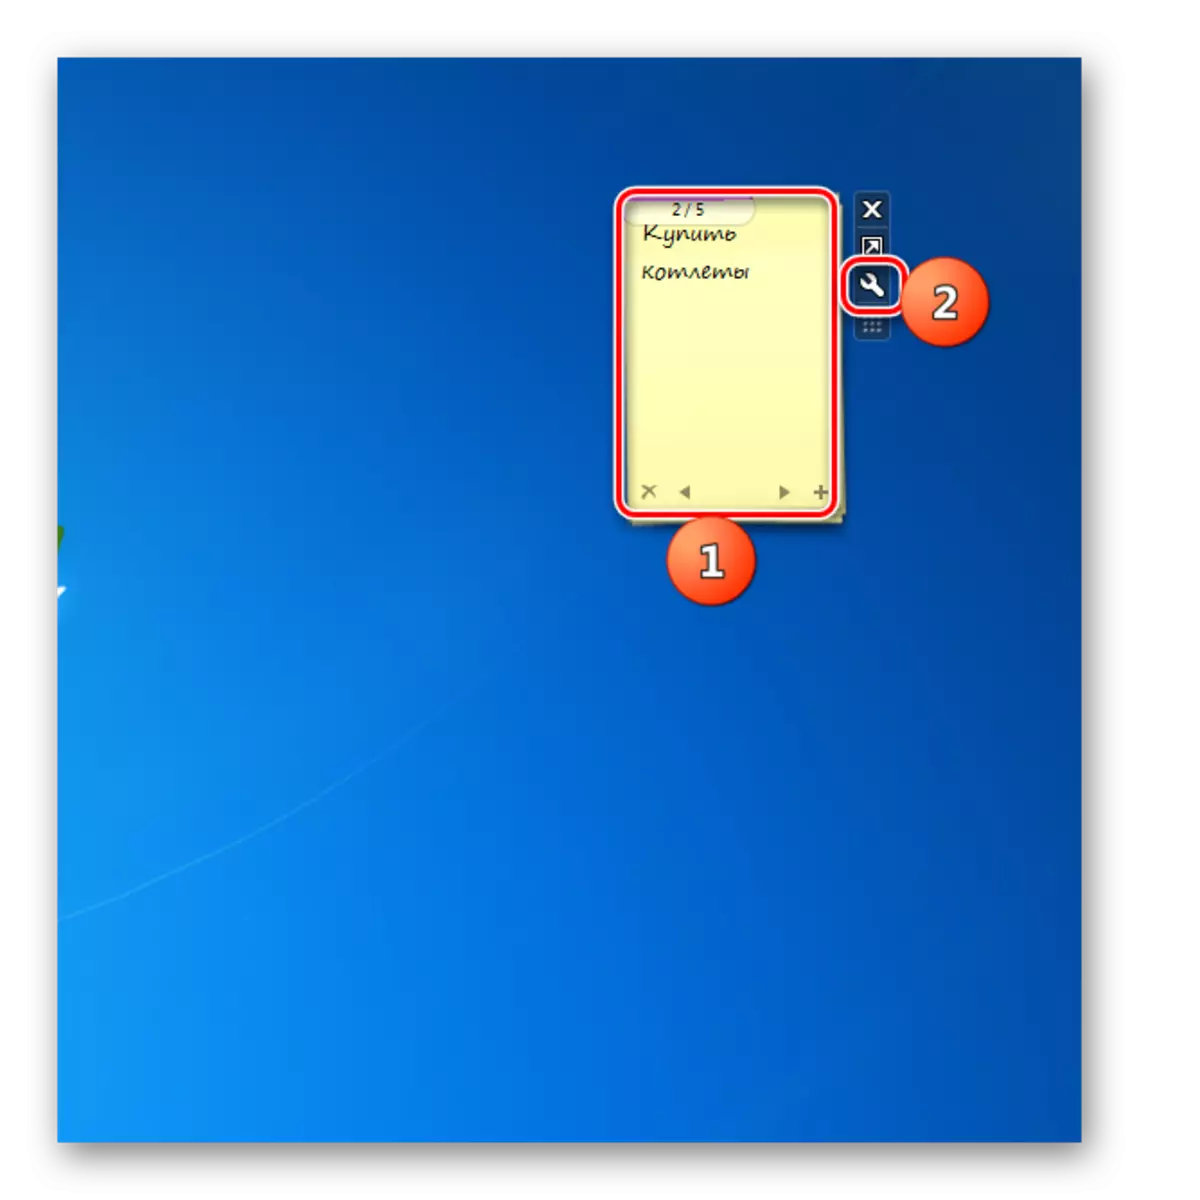 به یادداشت های طولانی تر مراجعه کنید پنجره های تنظیمات گجت را بر روی دسکتاپ در ویندوز 7 یادداشت کنید